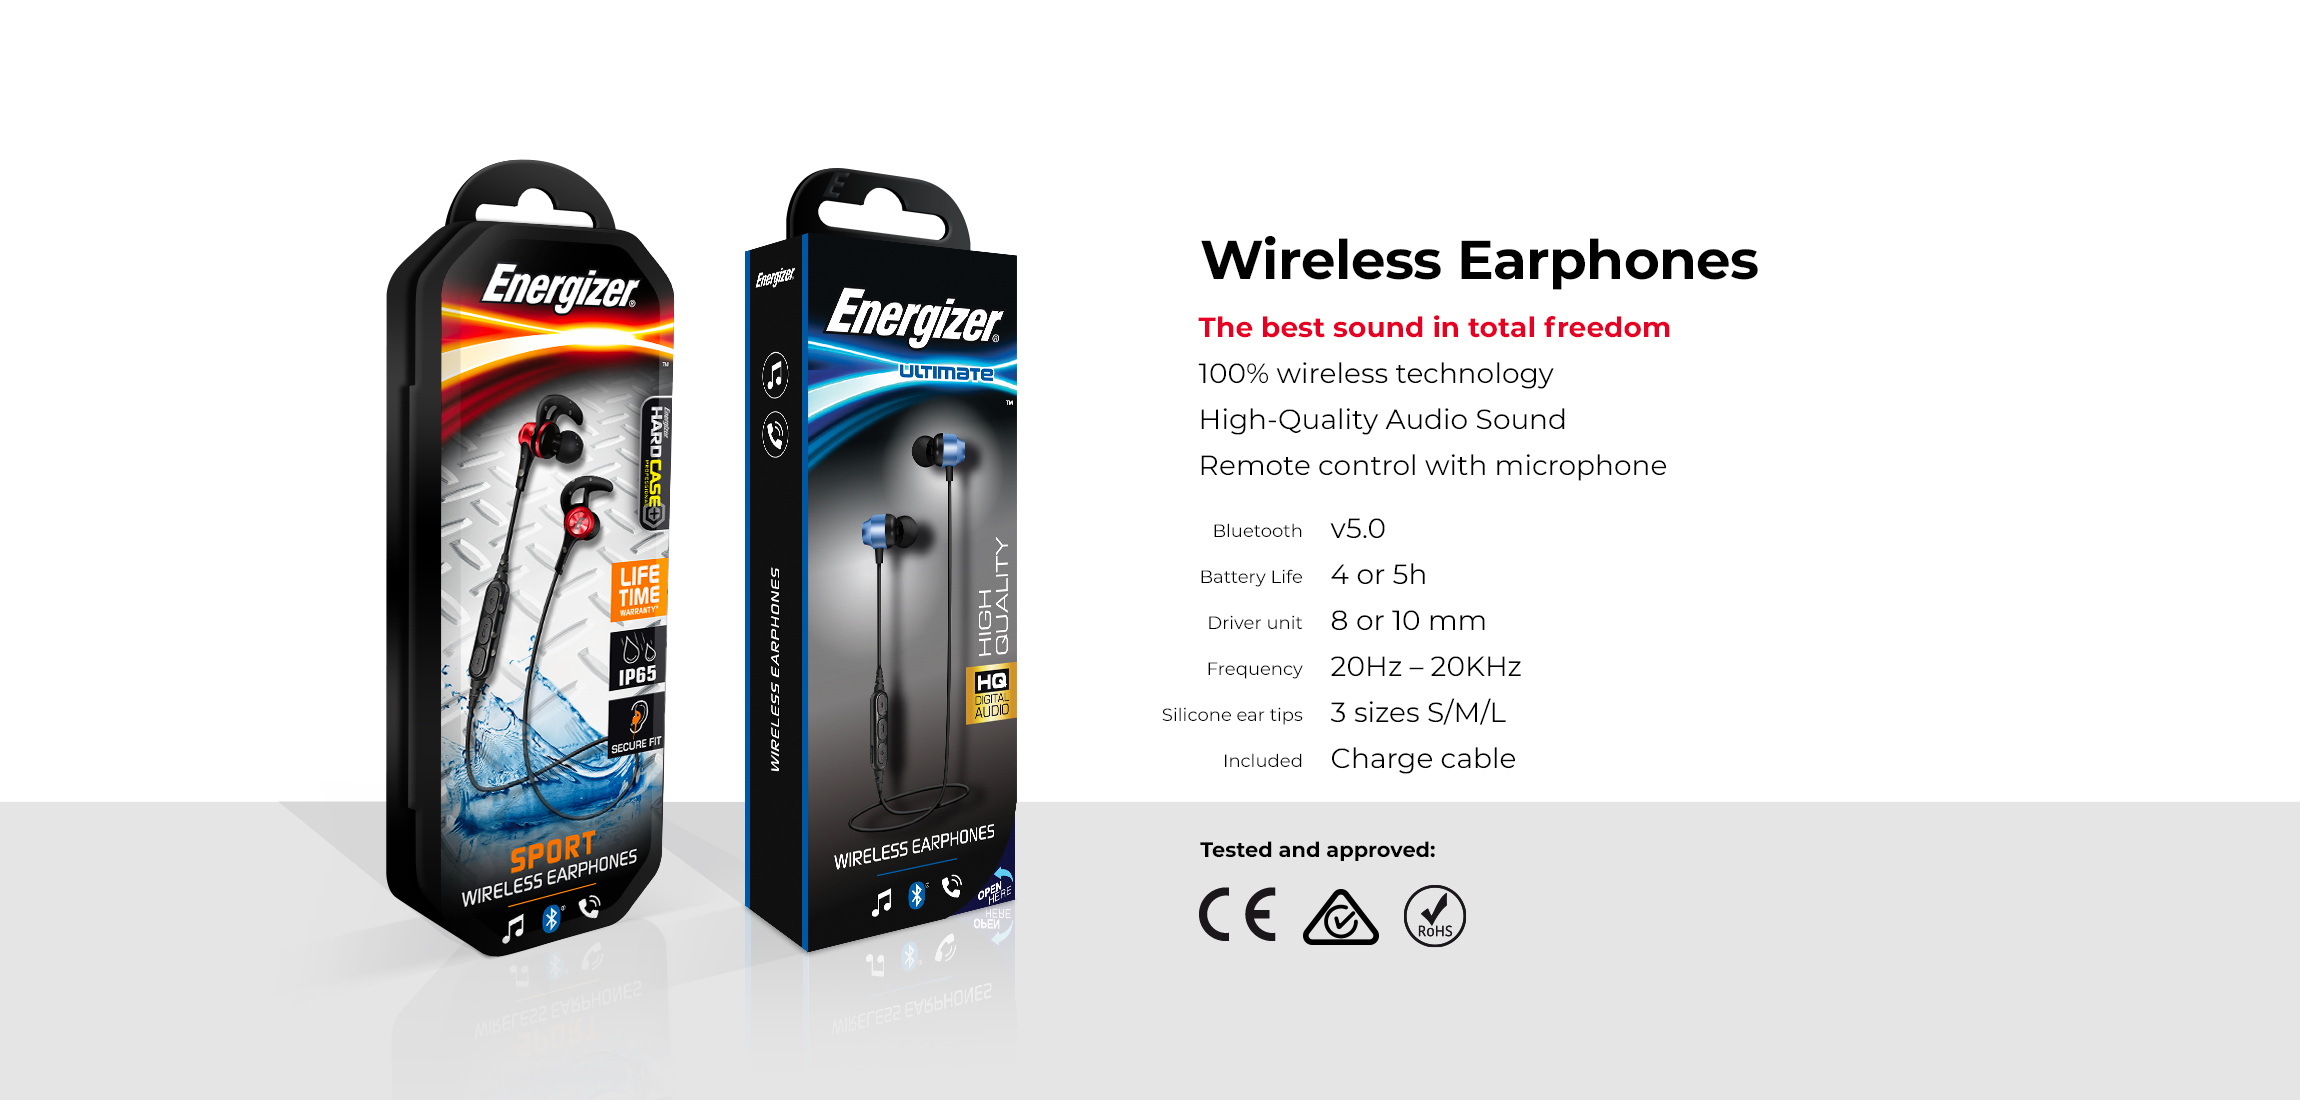 AT-Wireless-Earphones-Pack-EN.jpg